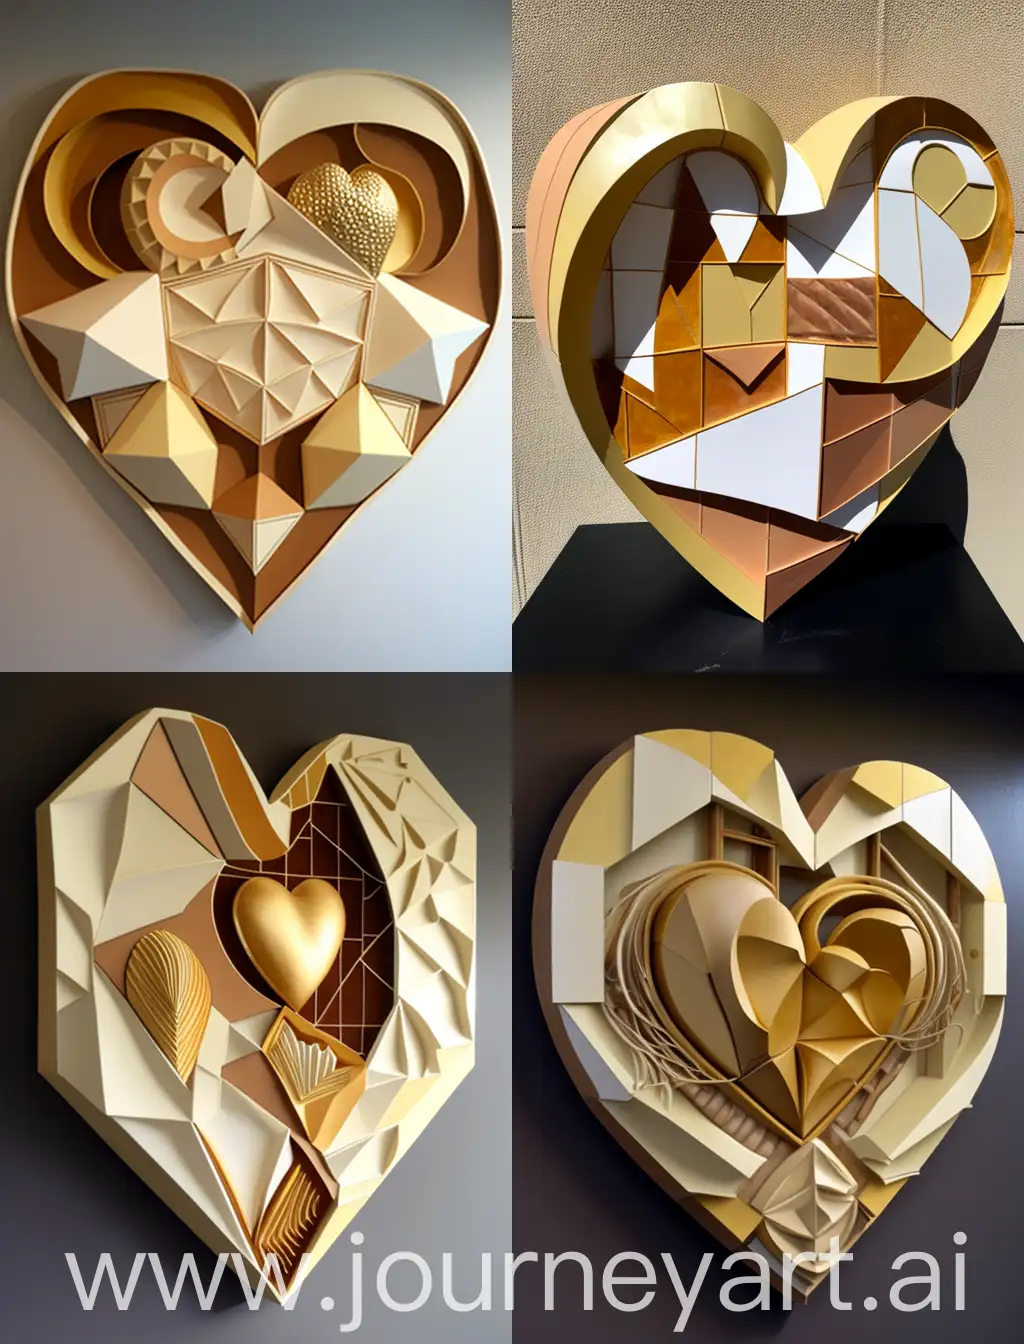 Constructivist-Ceramic-Wall-Art-Geometric-Heart-Centerpiece